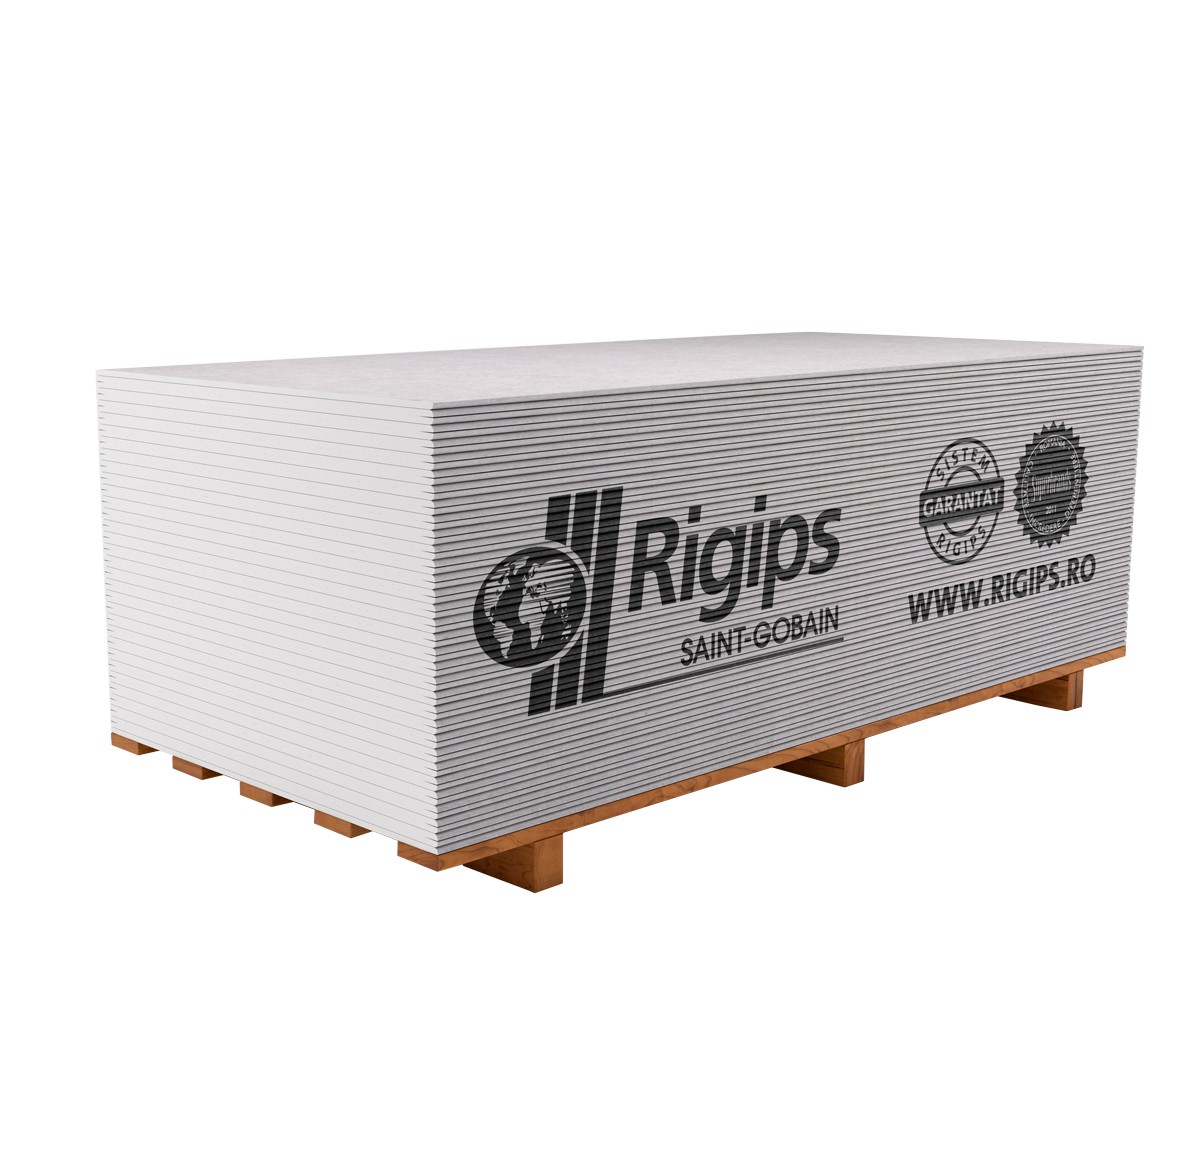 Placi gips carton uzuale - Placa gips carton Rigips RB 9.5 x 1200 x 2600 mm, maxbau.ro